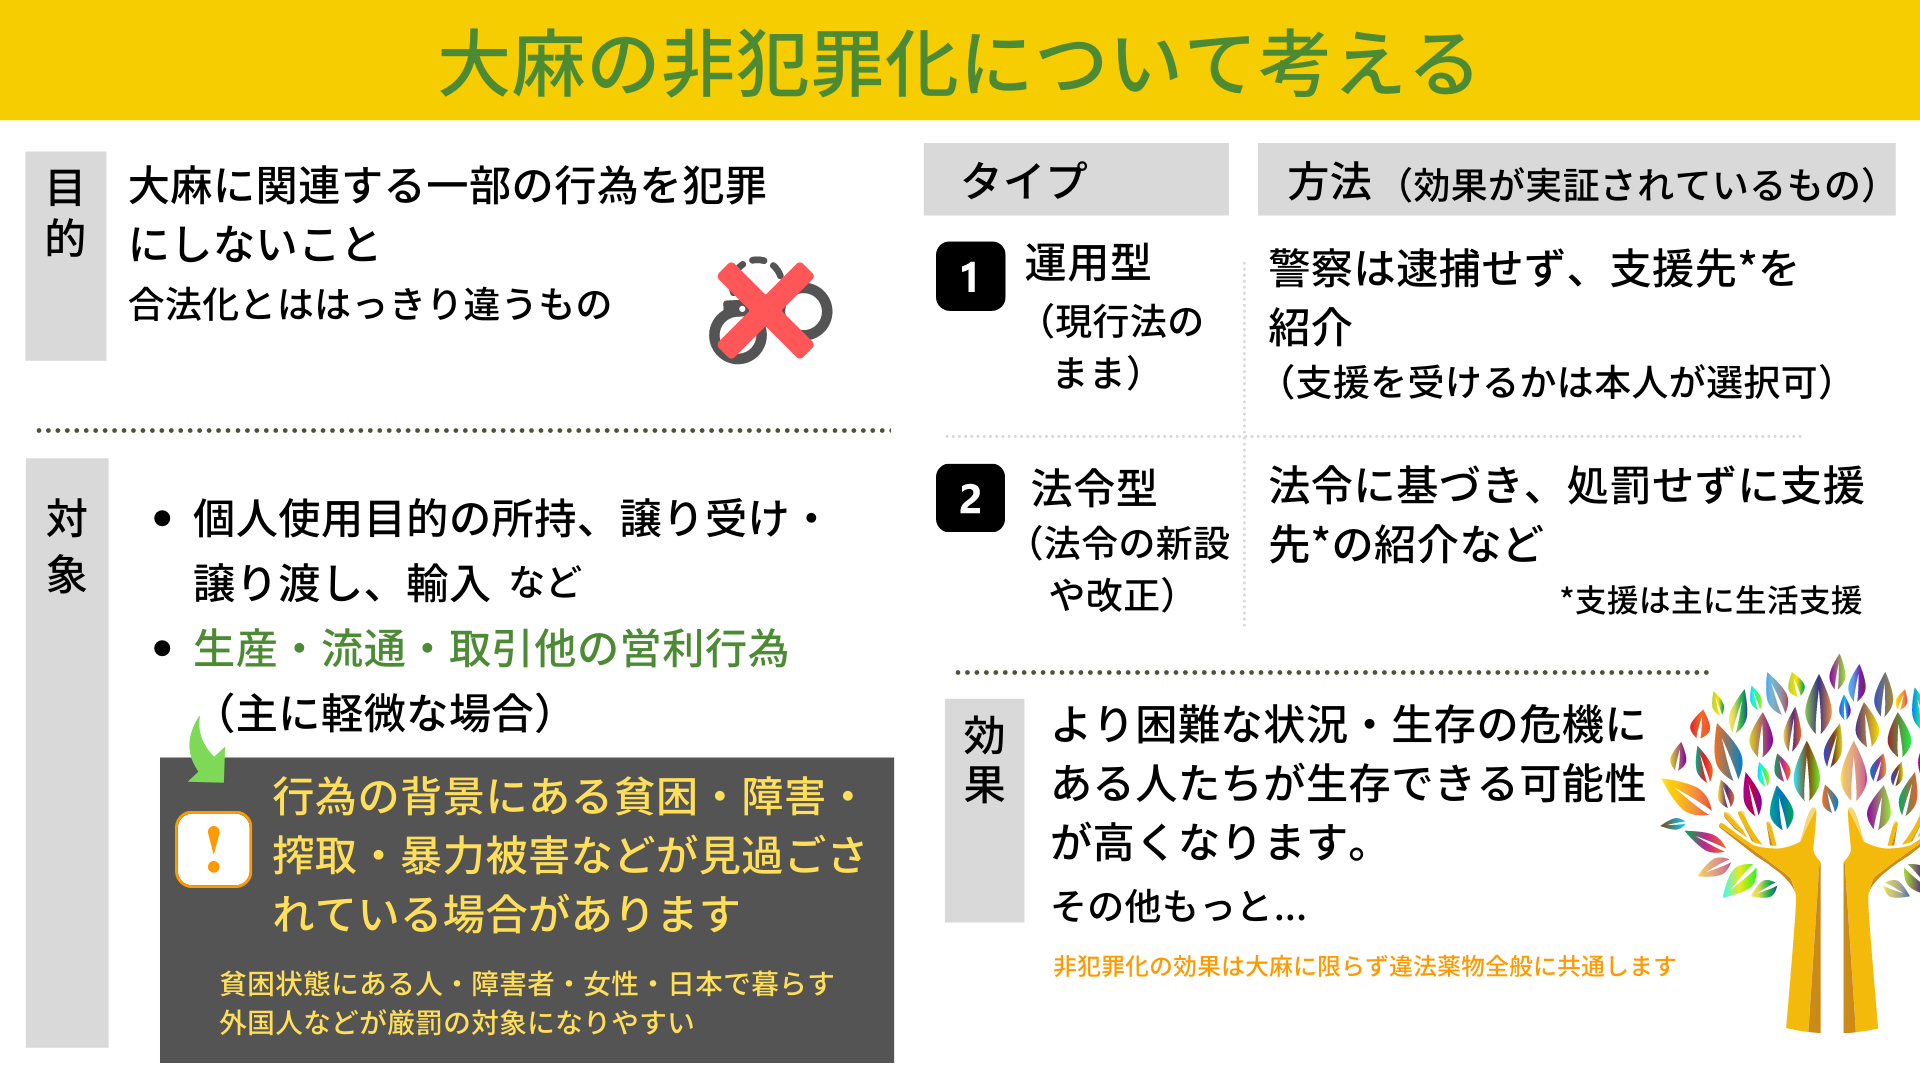 大麻の非犯罪化について考える Nyan 日本薬物政策アドボカシーネットワーク